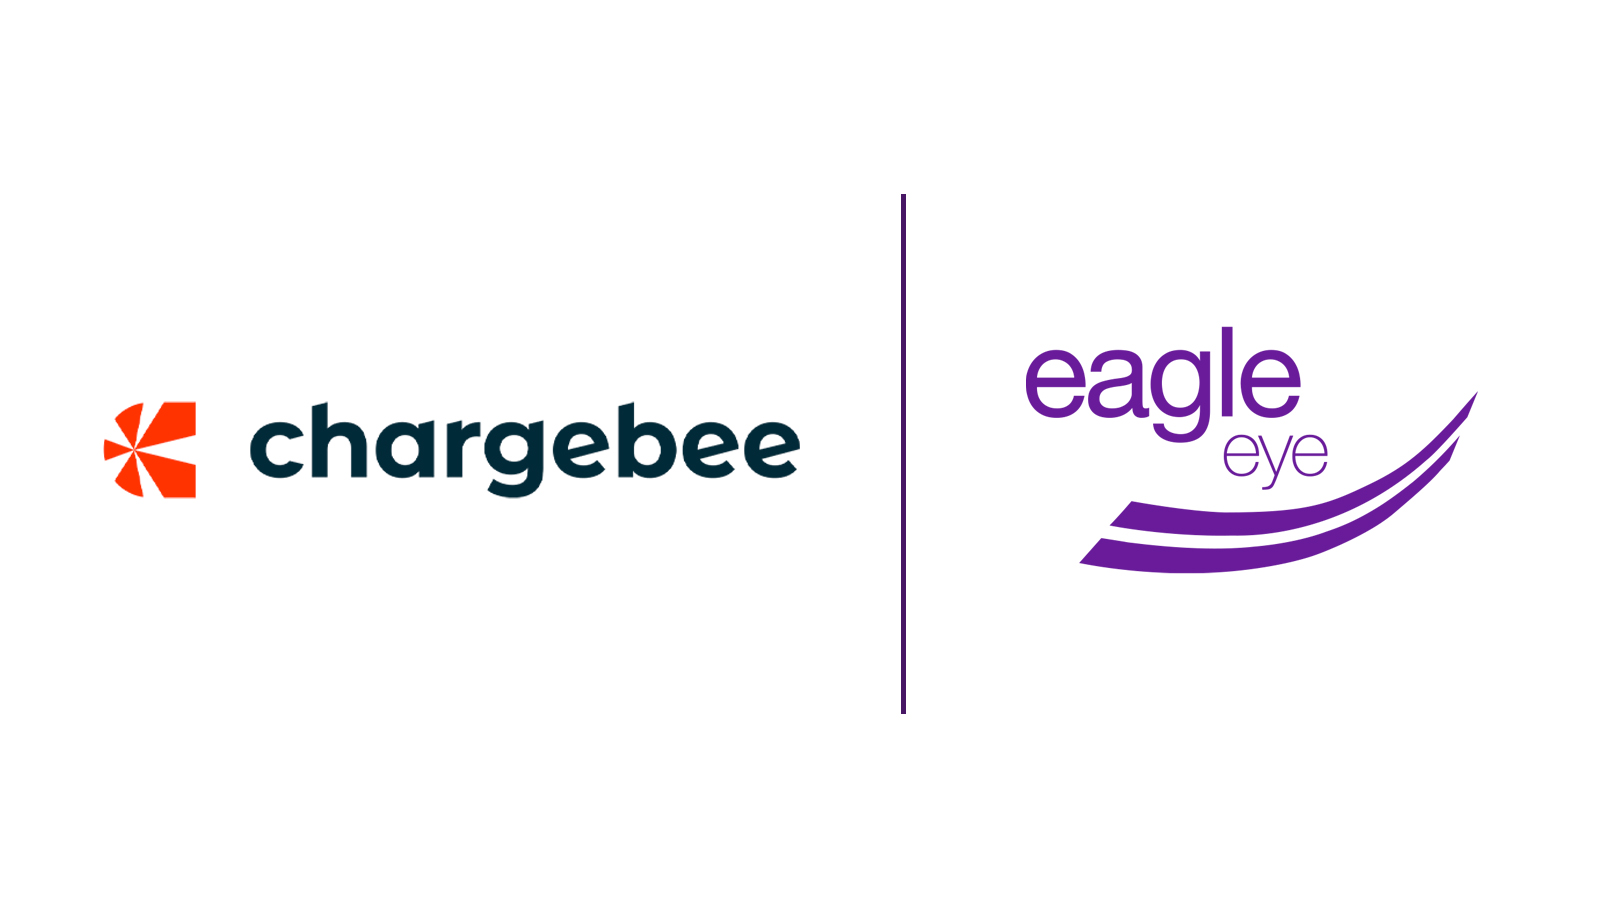 Chargebee and Eagle Eye